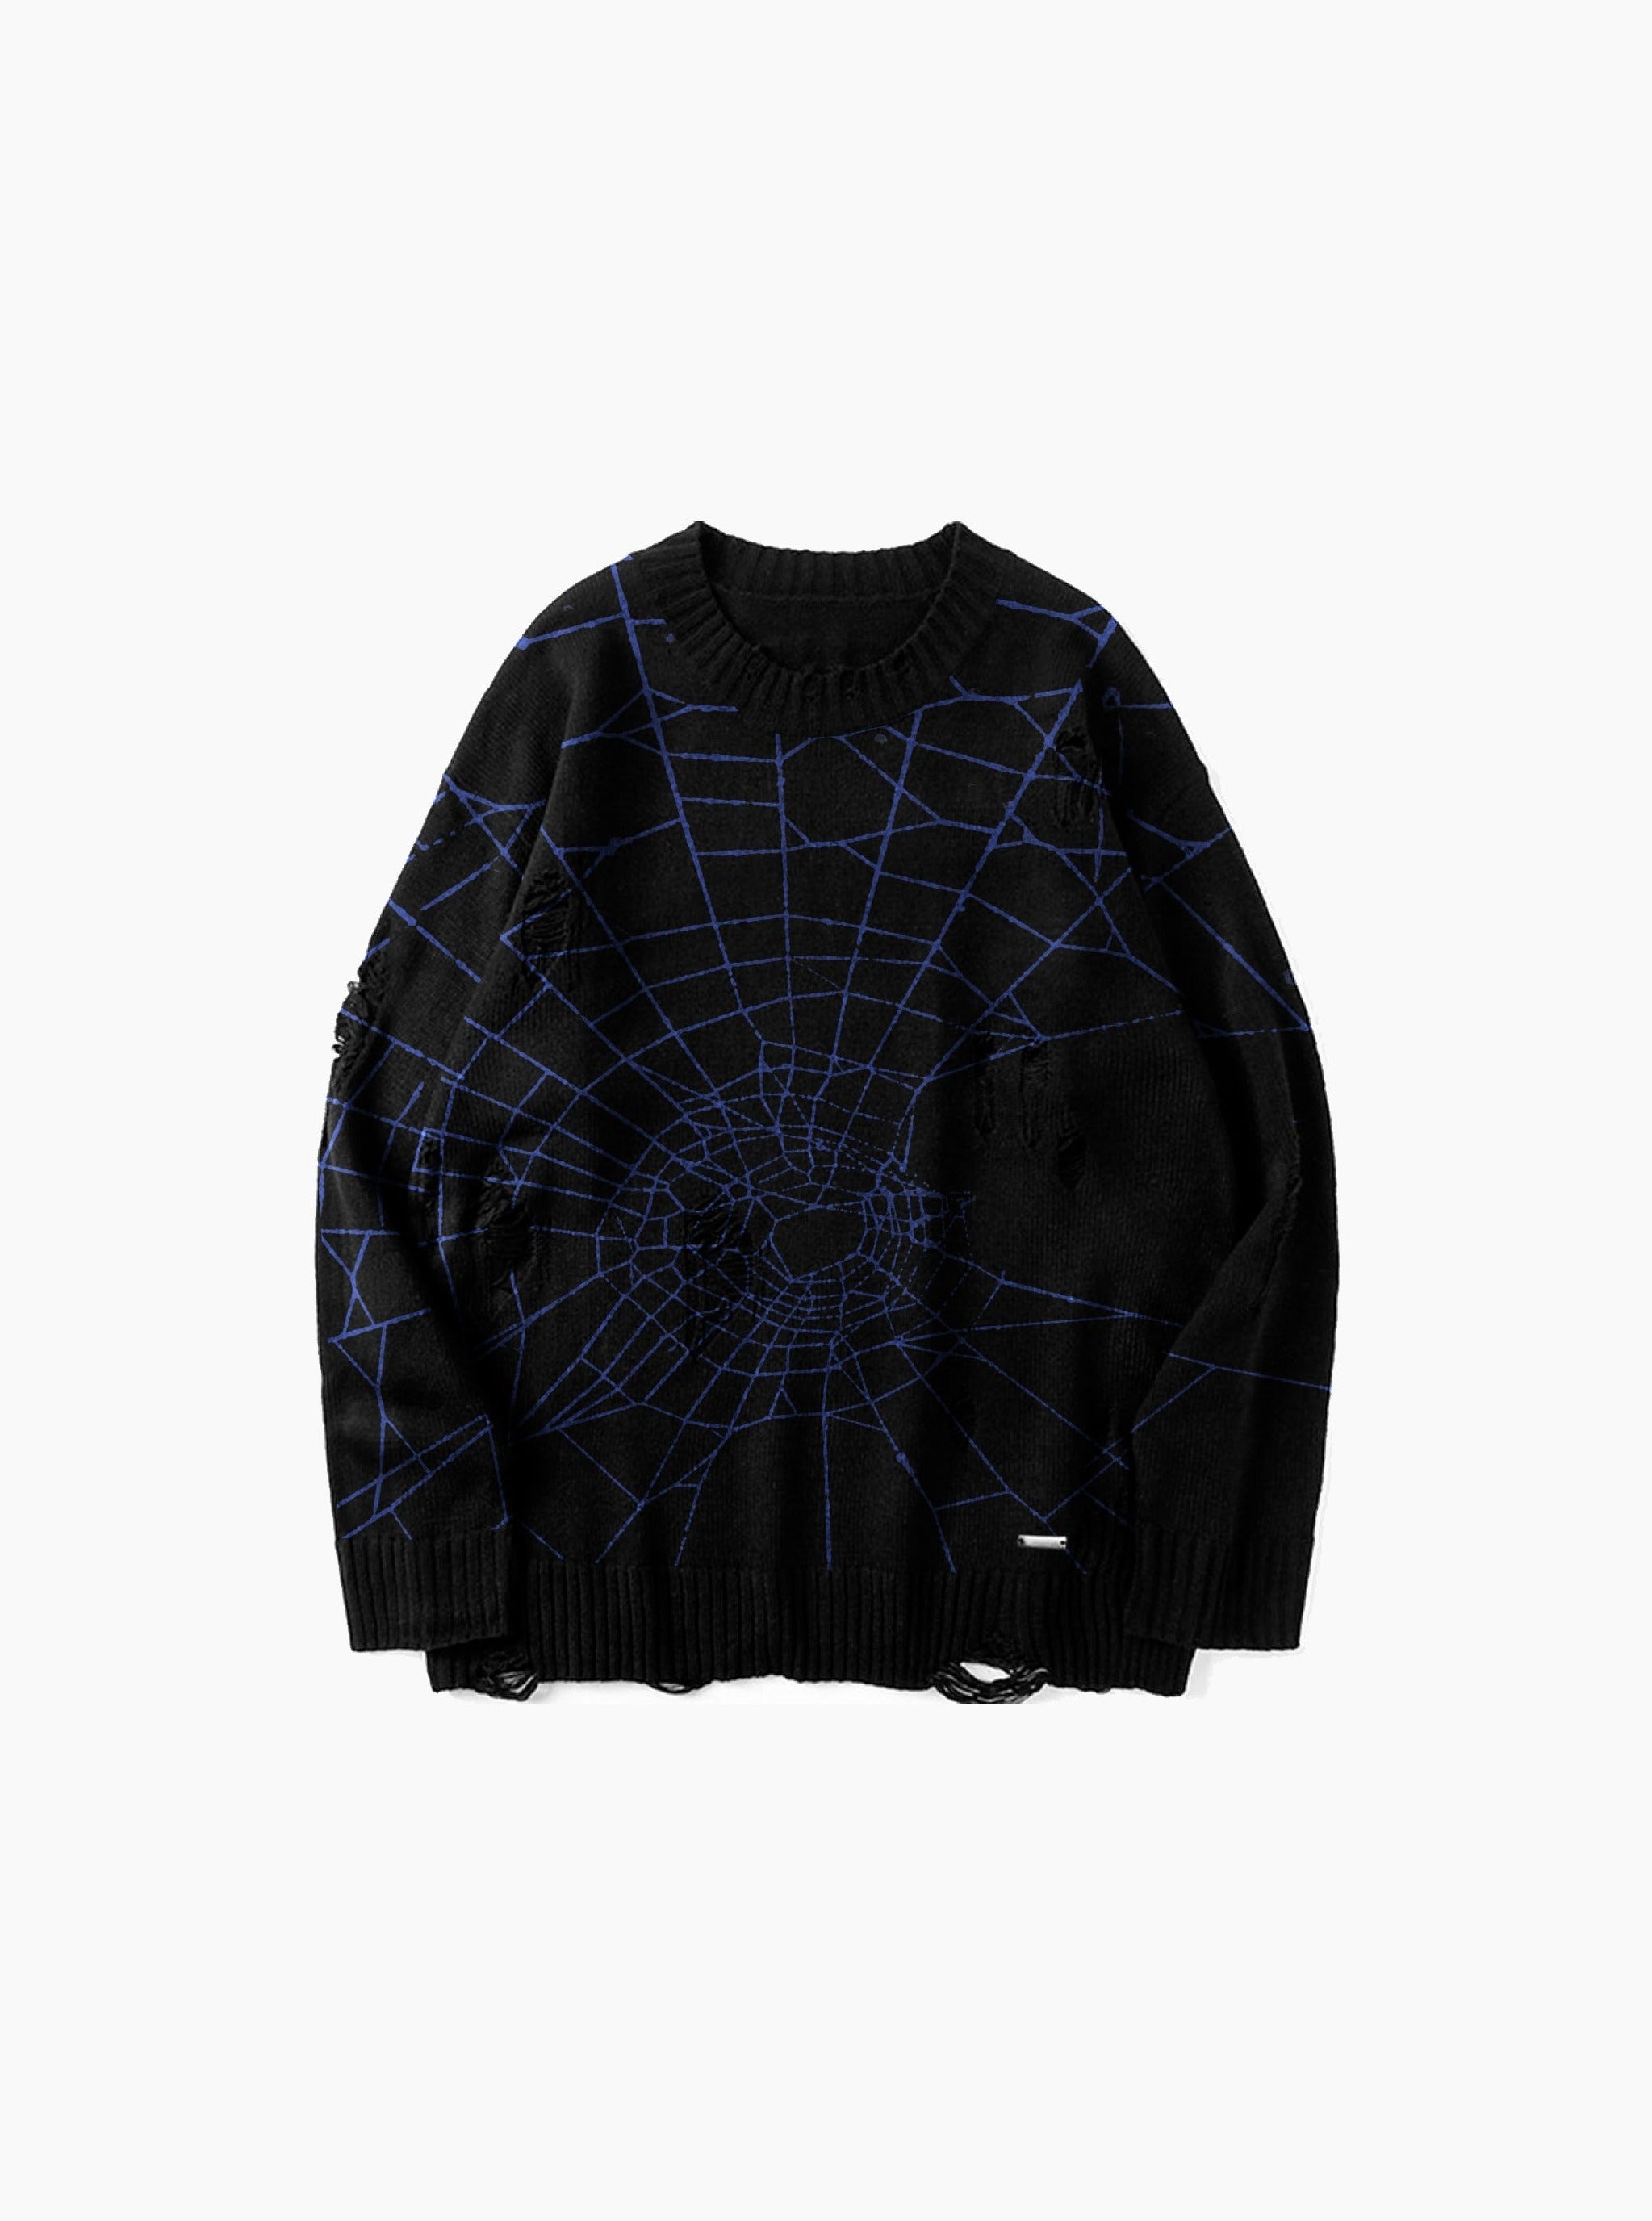 Sole et. Al Dark Web - Pull en tricot délavé